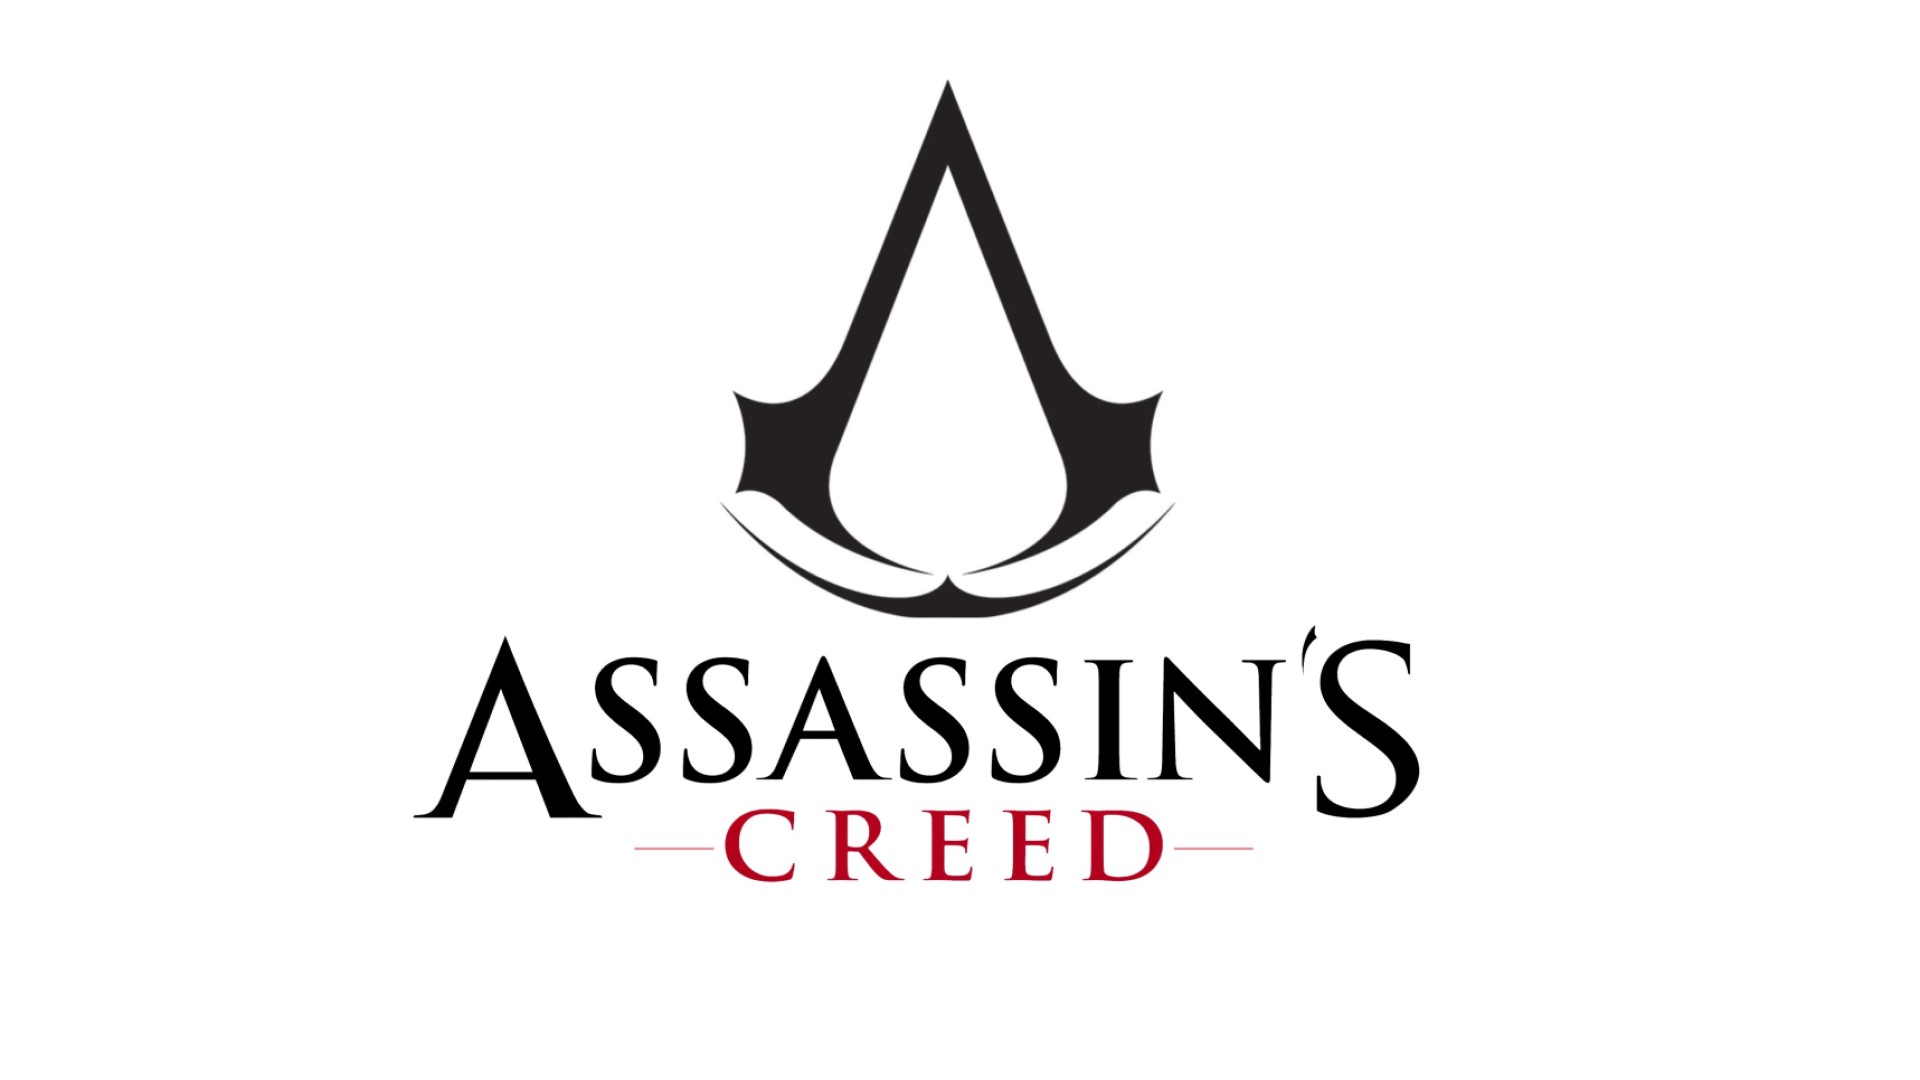 Assassins-creed-logo.jpg